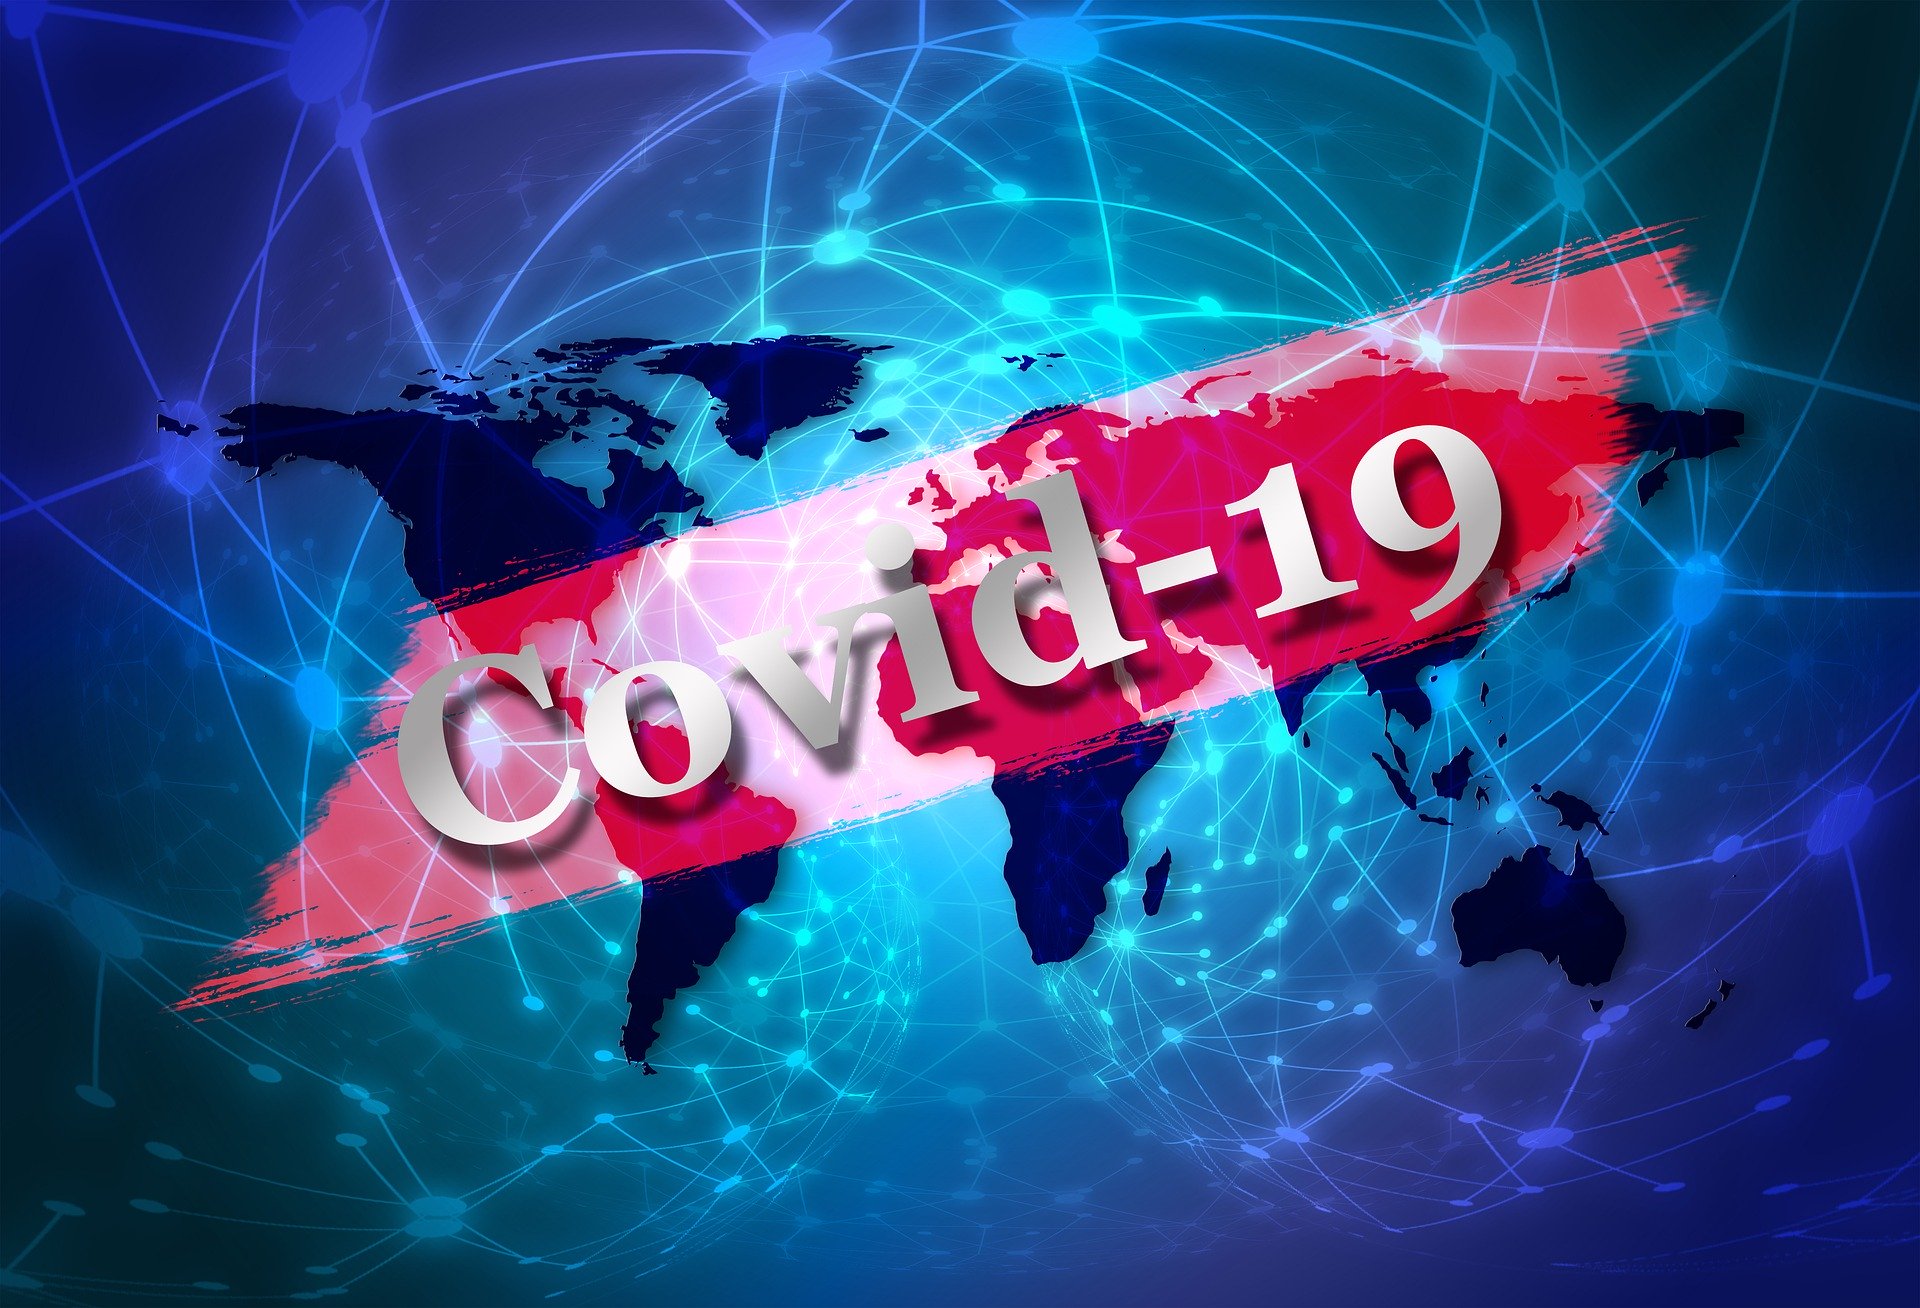 Važna obavijest: Komunikacija s korisnicima tijekom trajanja epidemije koronavirusa - Slika 1